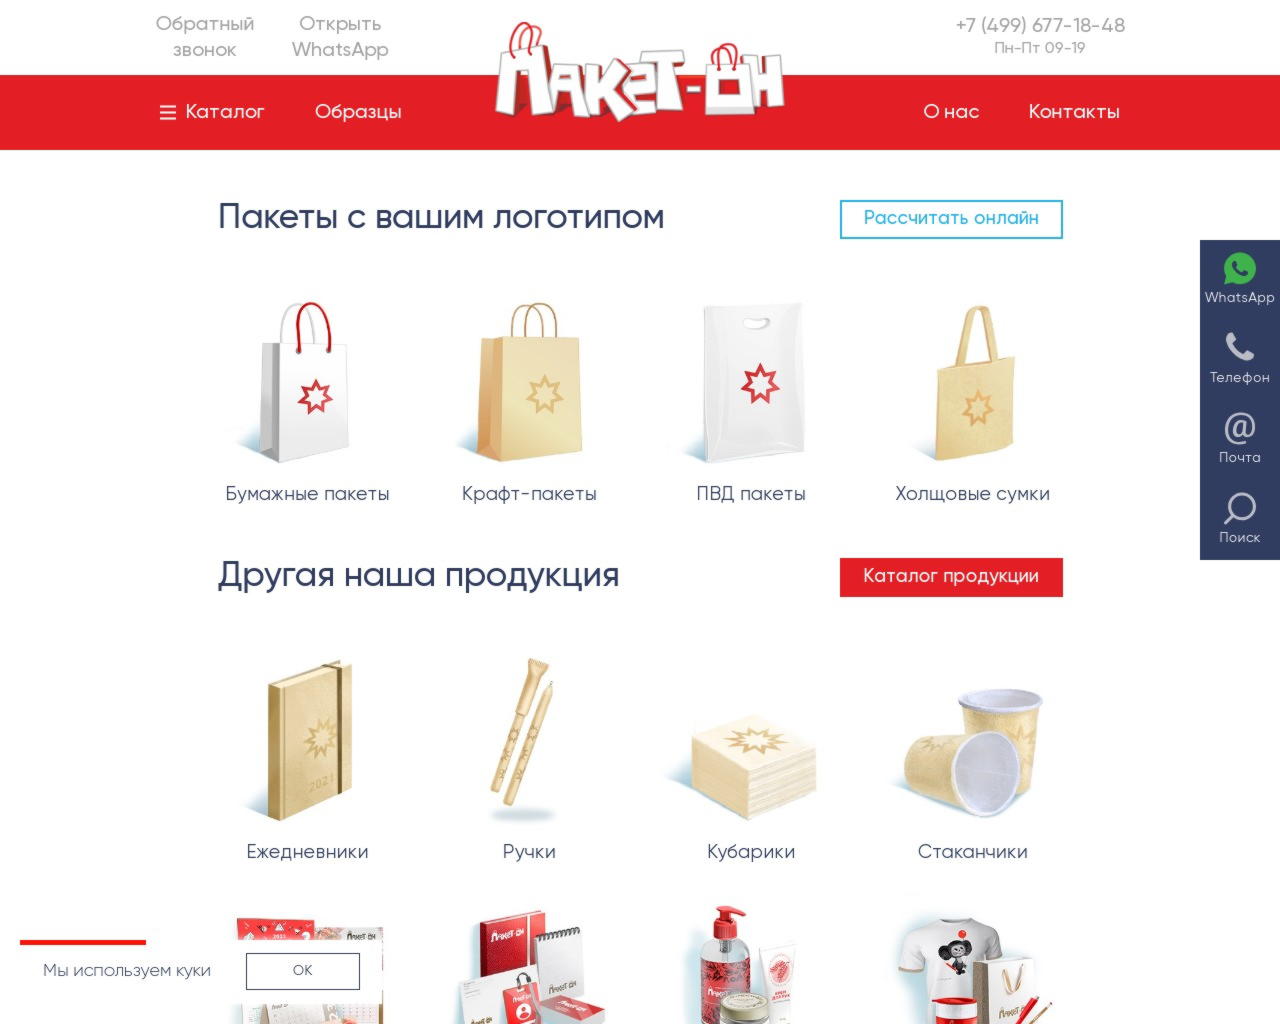 Изготовление бумажных пакетов в Москве дешево и качественно